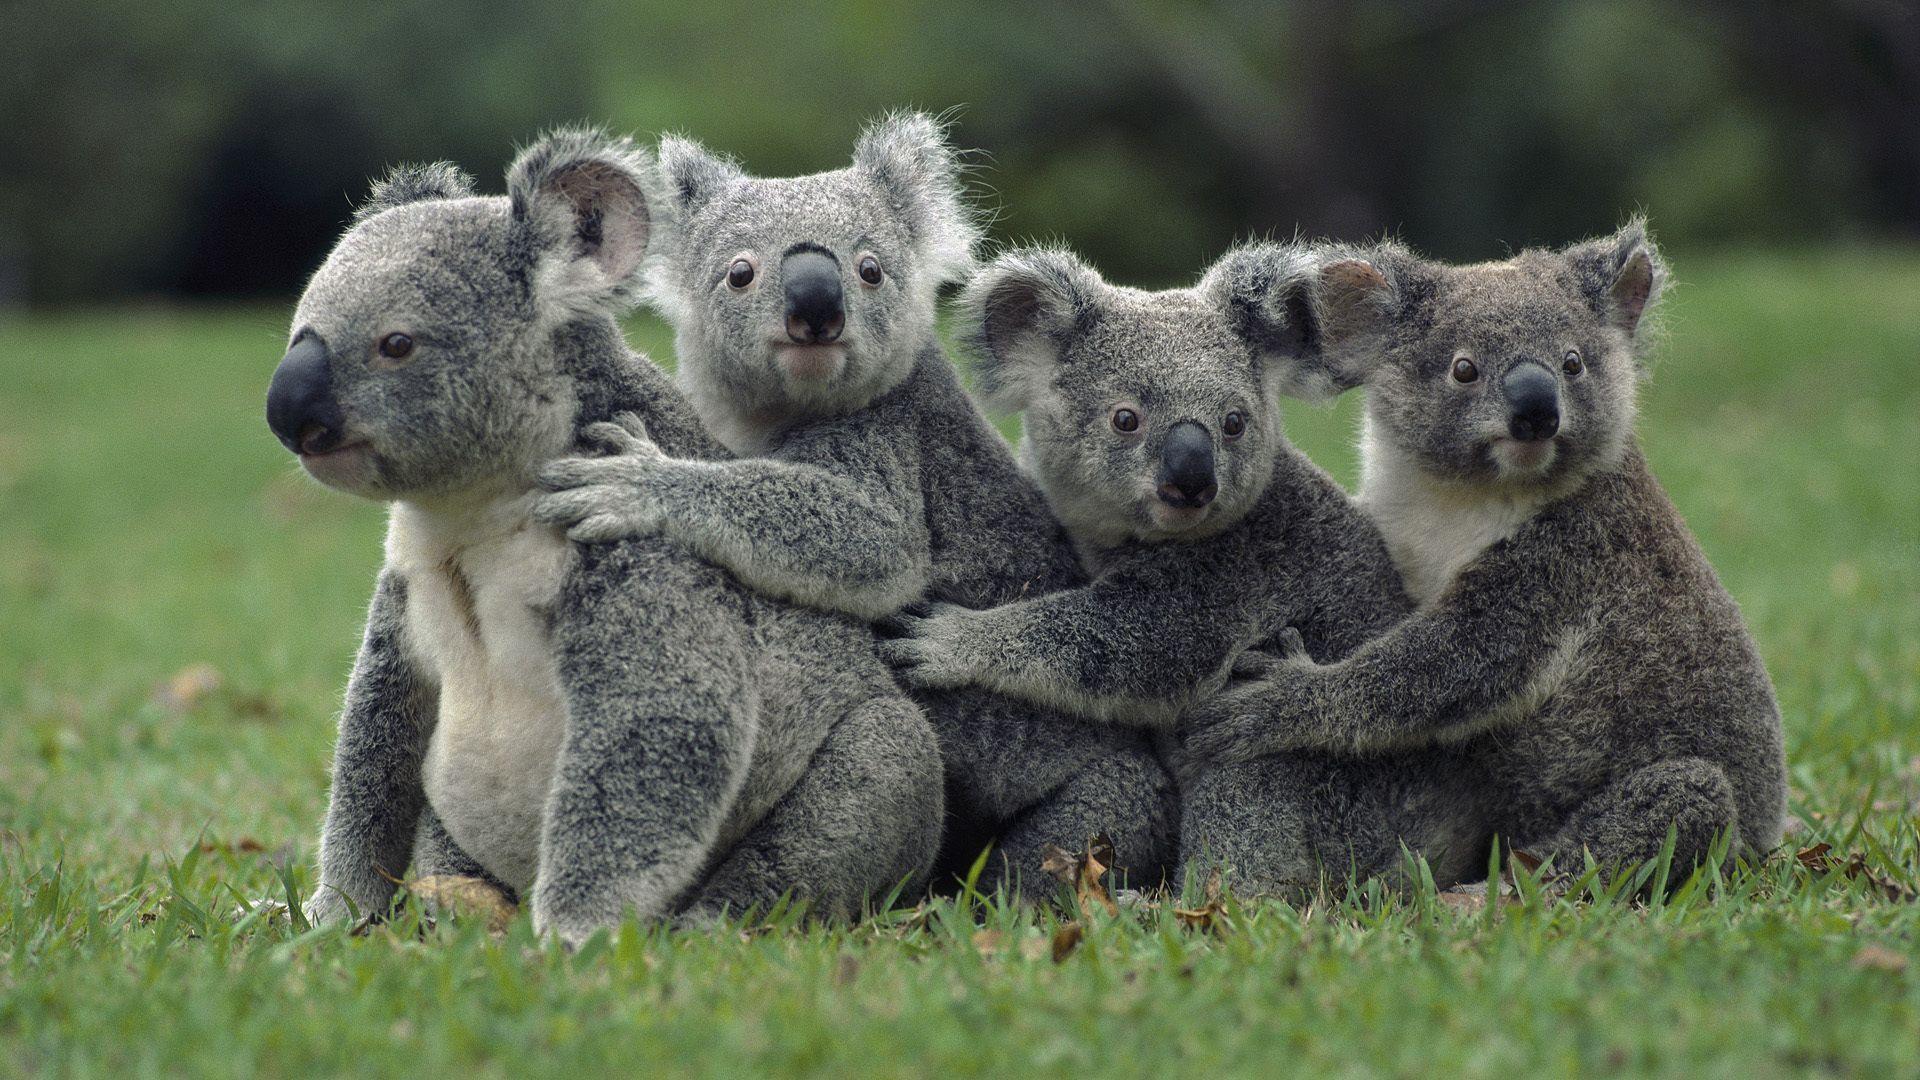 Koala Bear Wallpaper for Desktop. Koala Wallpaper, animals